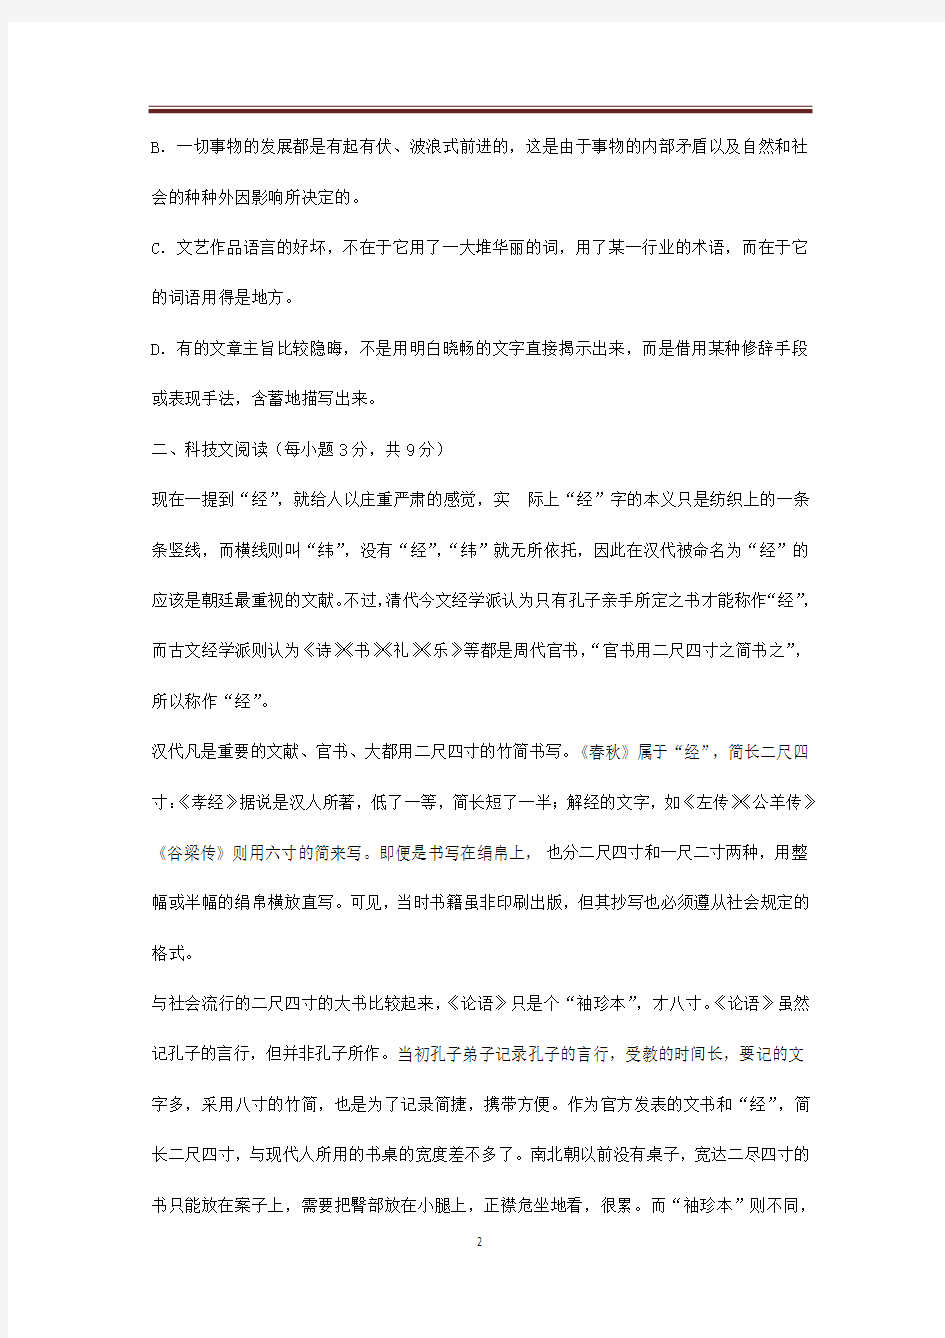 2018年天津一中高三年级三月考试题